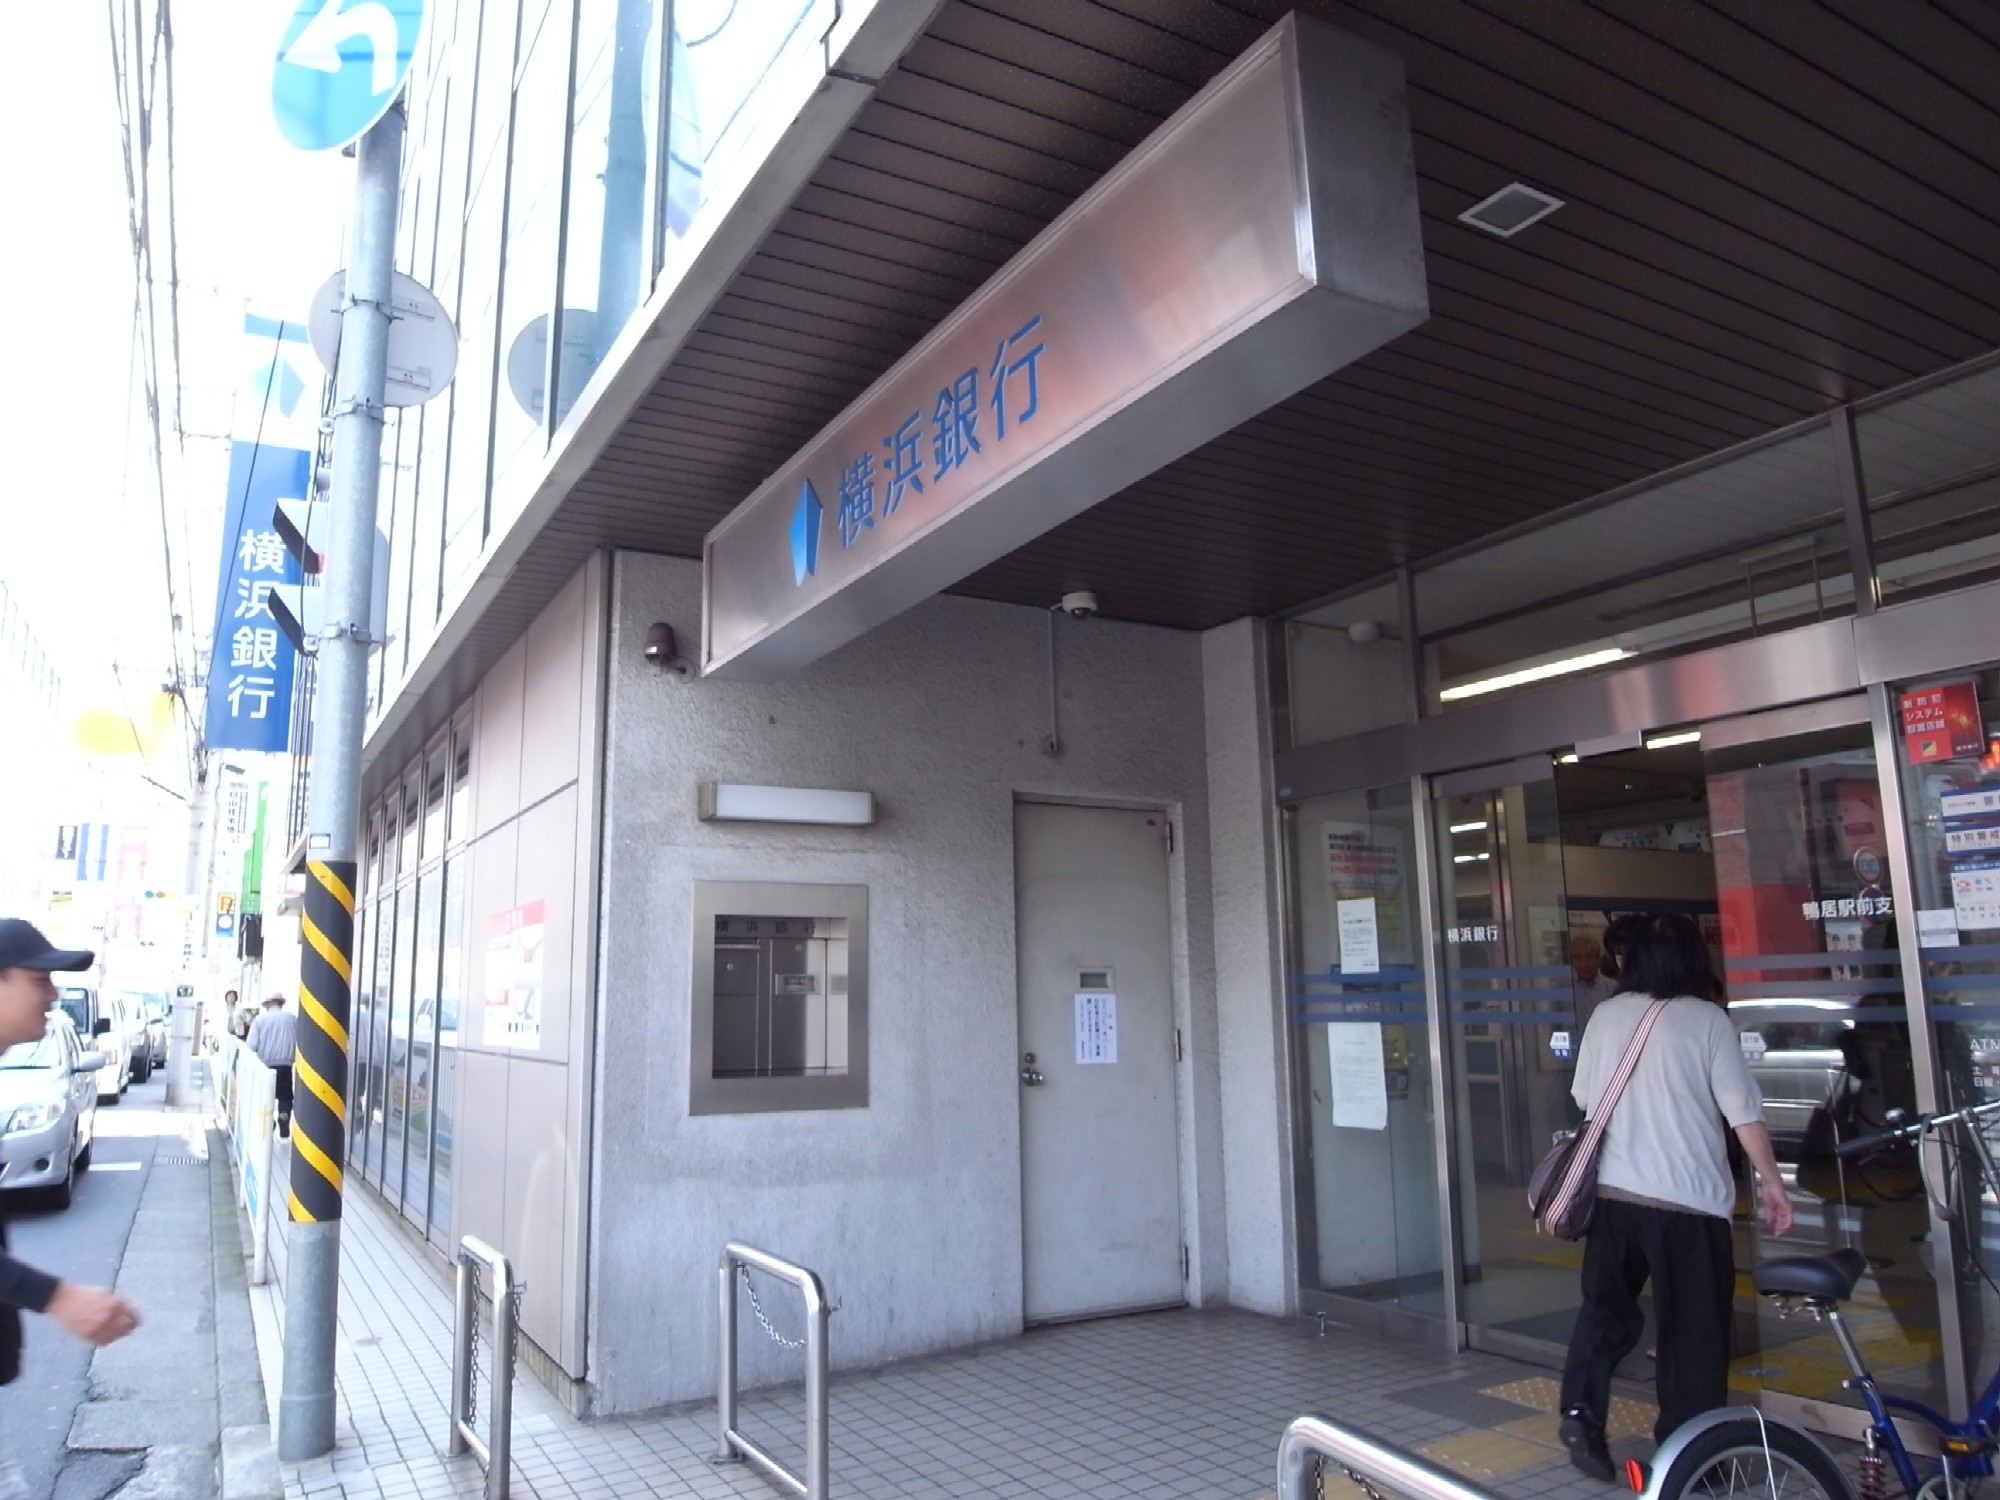 Bank. Bank of Yokohama lintel until Station Branch (Bank) 1257m